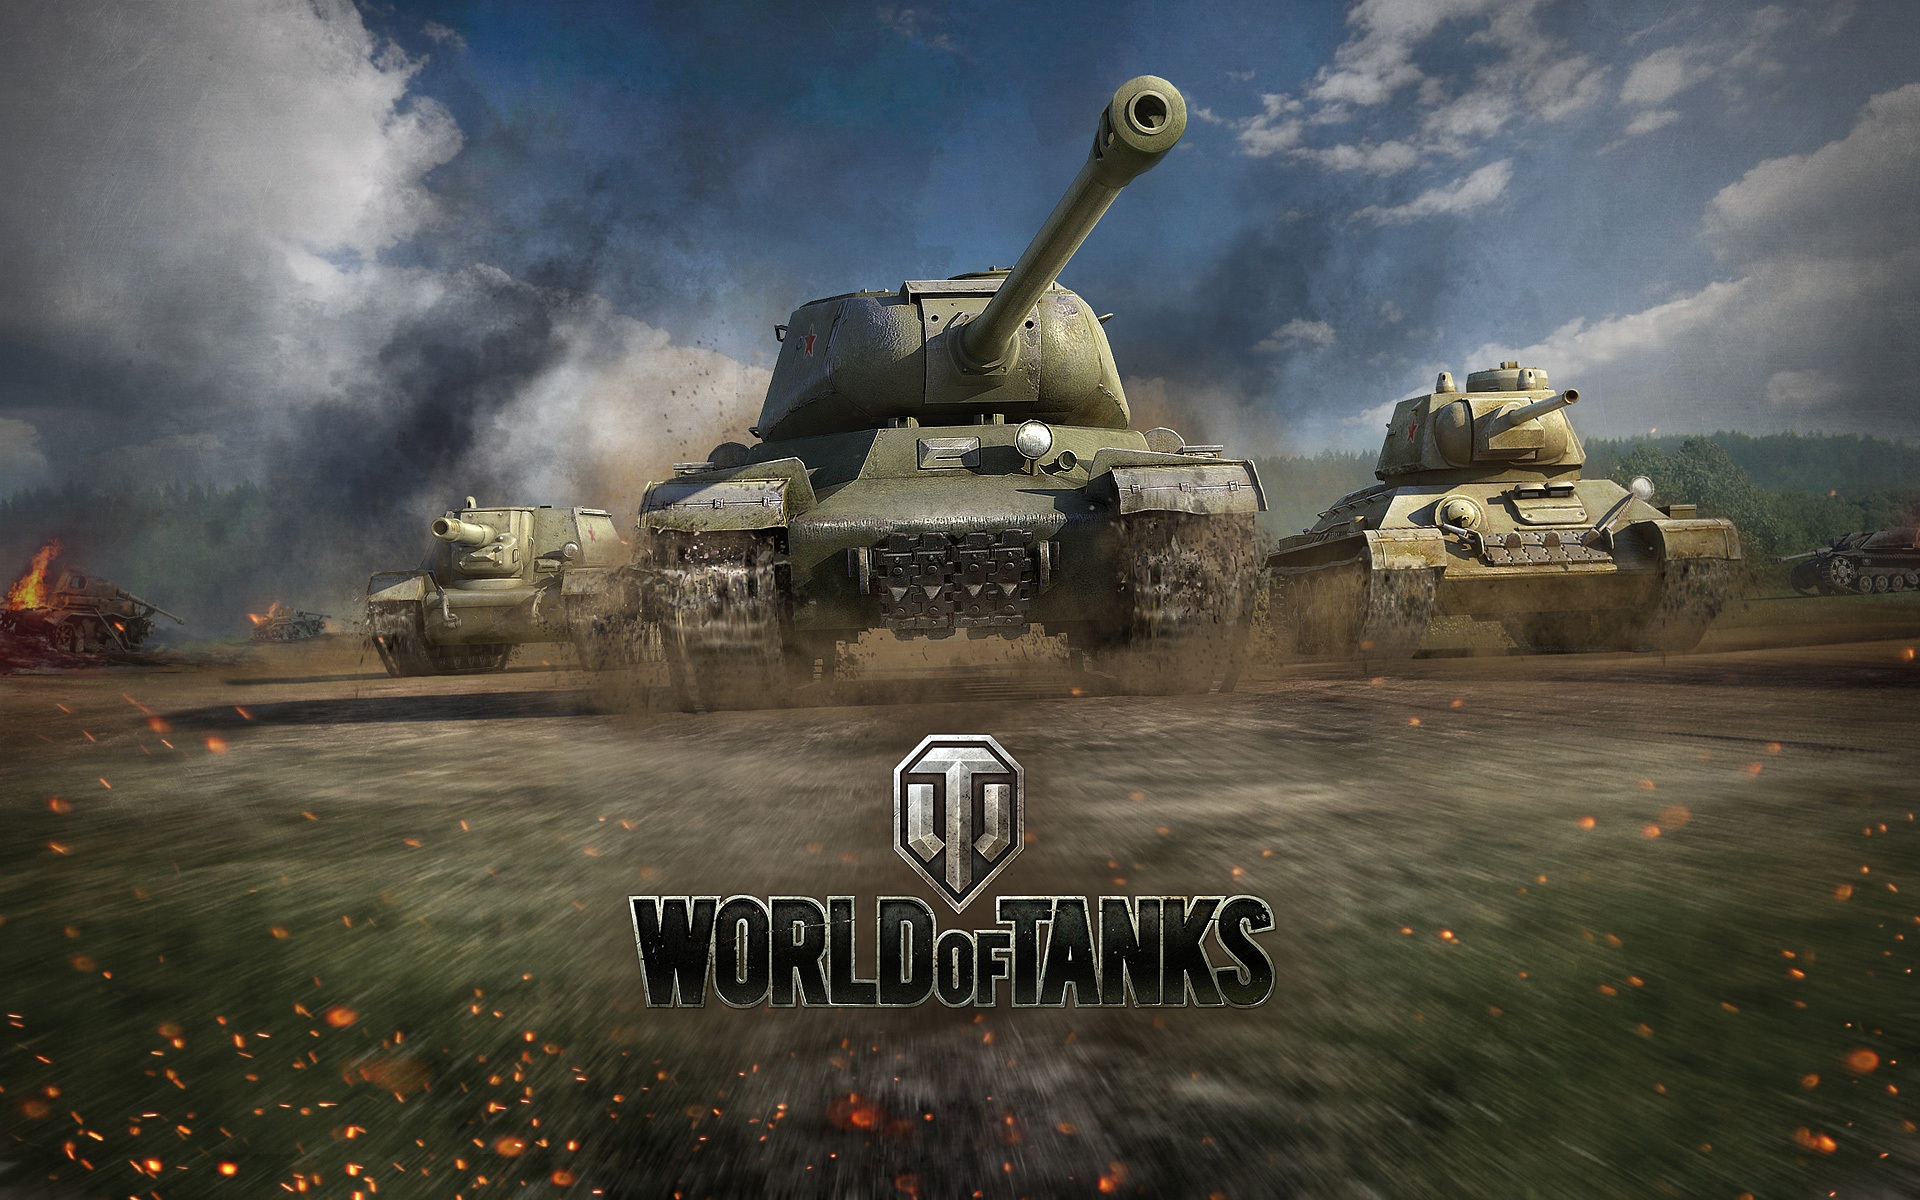 World-Of-Tanks-War-Game-Net-Object-Tank-WallpapersByte-com-1280x1024